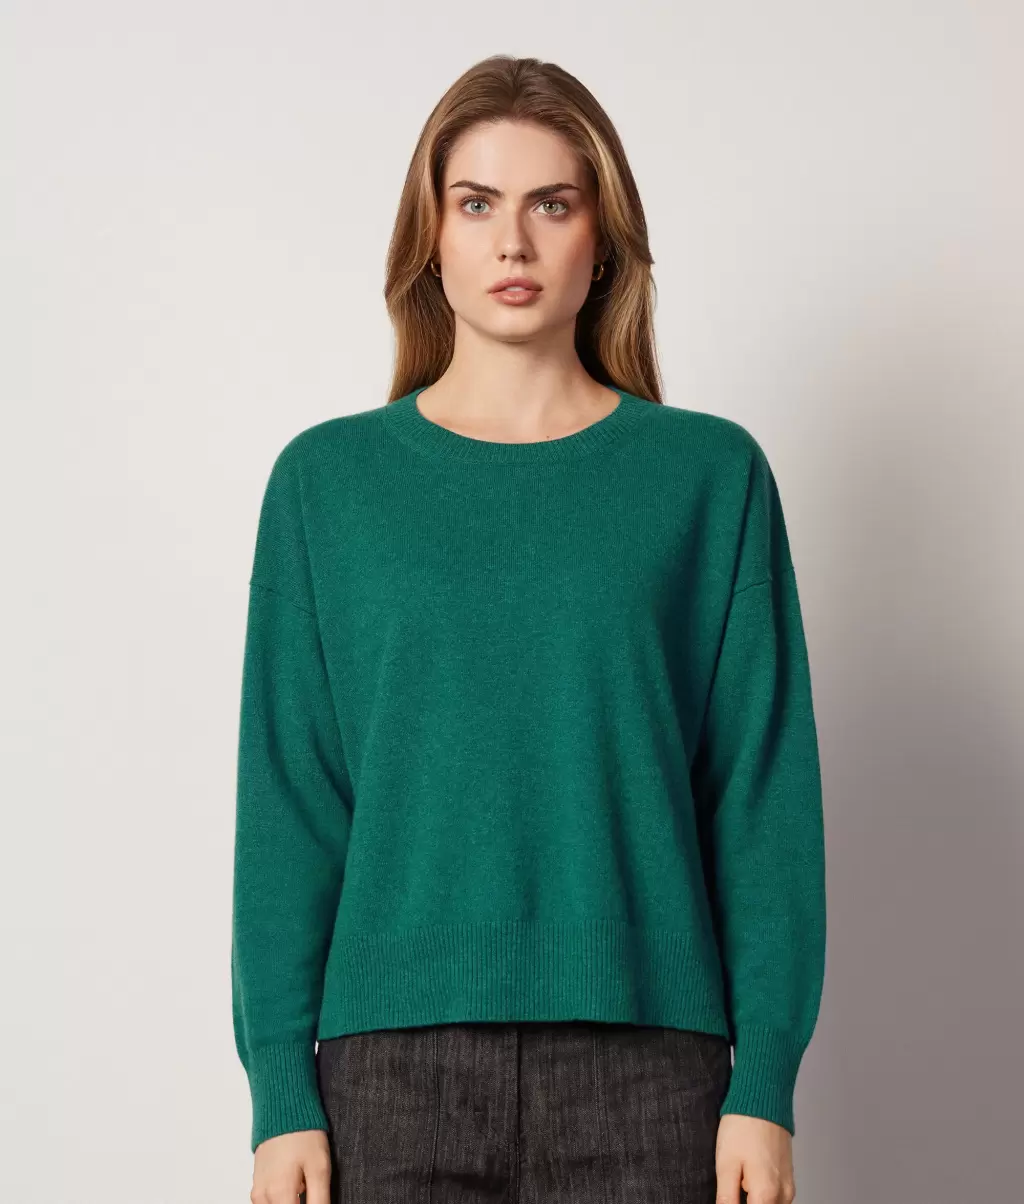 Dark_Green Sweter Z Okrągłym Dekoltem I Rozcięciami Z Kaszmiru Ultrasoft Falconeri Kobieta Swetry Z Okrągłym Dekoltem - 1